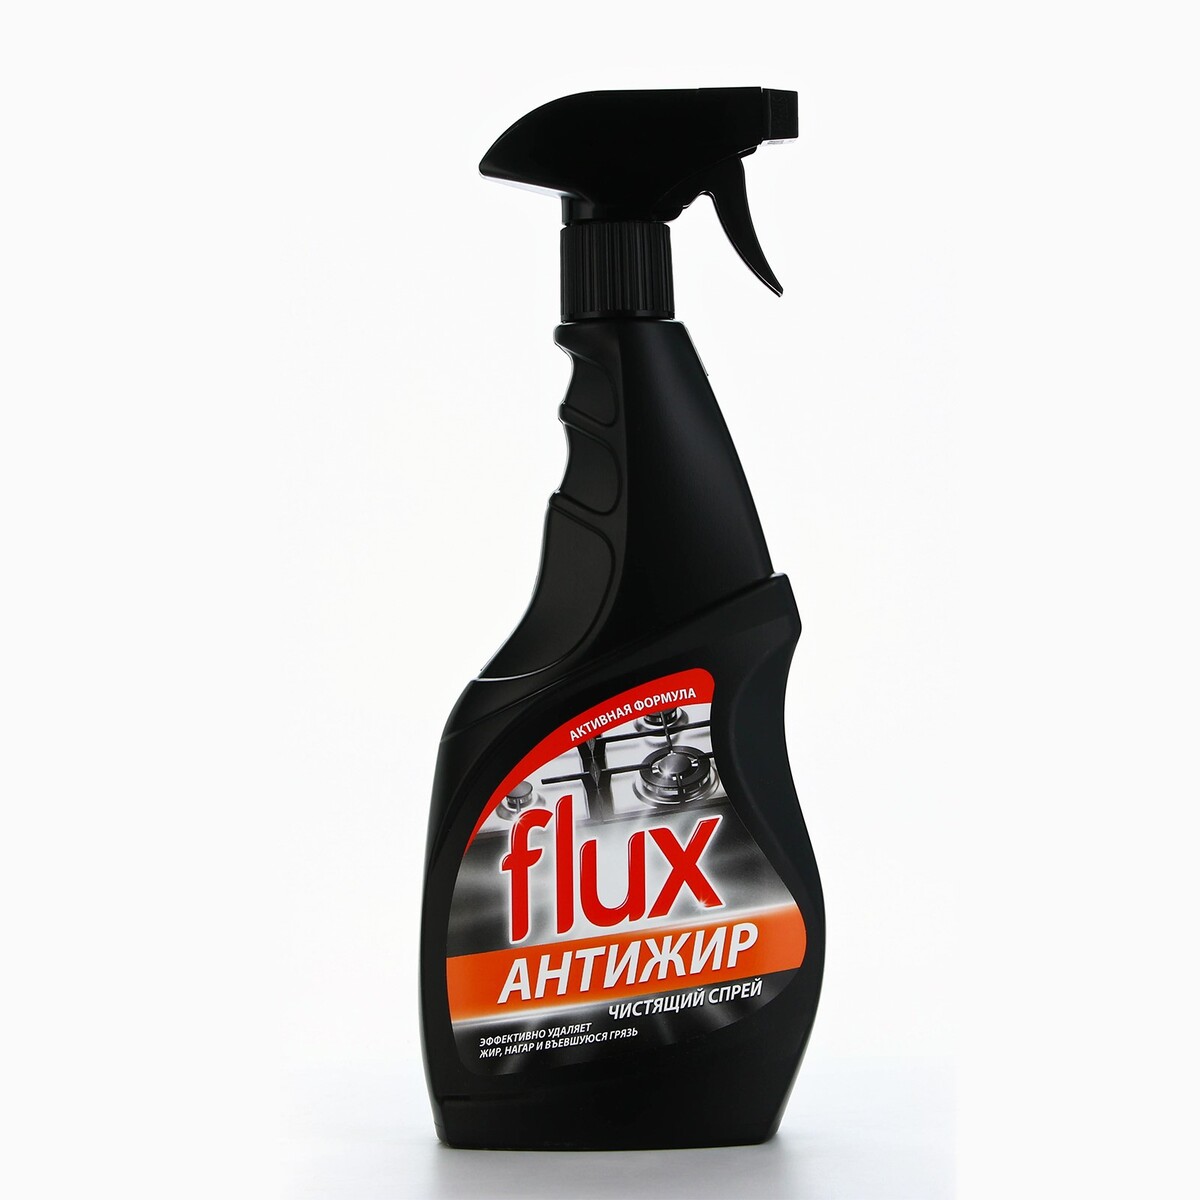 Чистящее средство для плит flux